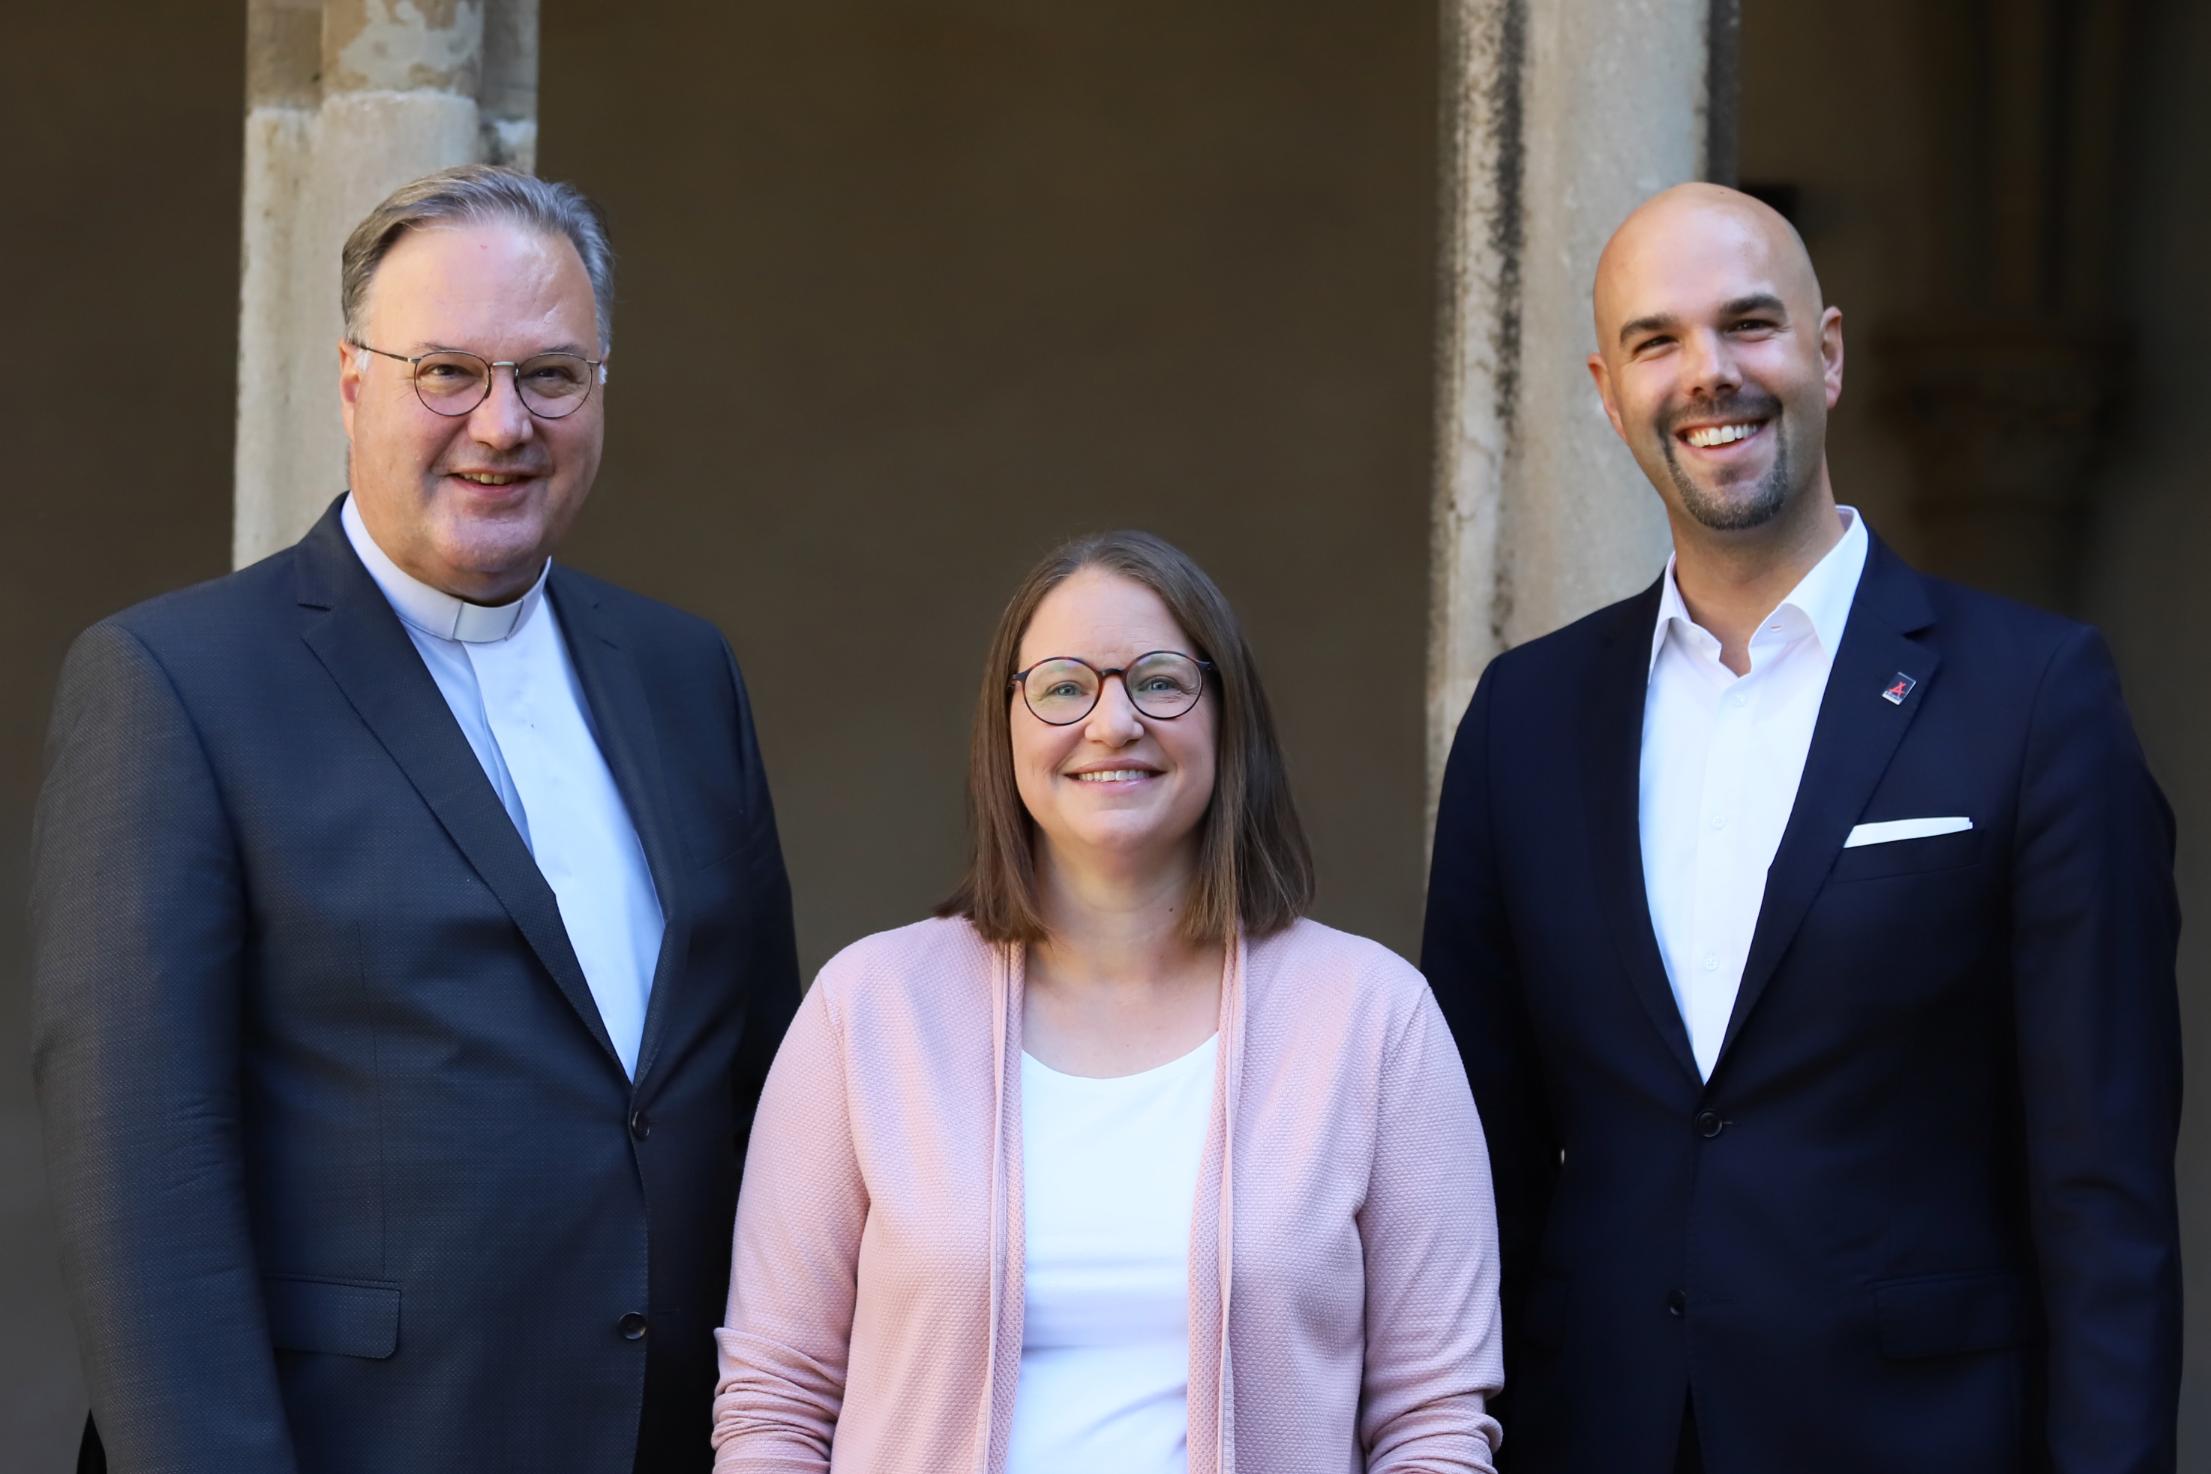 Teamfoto Dr. Ullrich, Fr. Werlein, Hr. Tittel